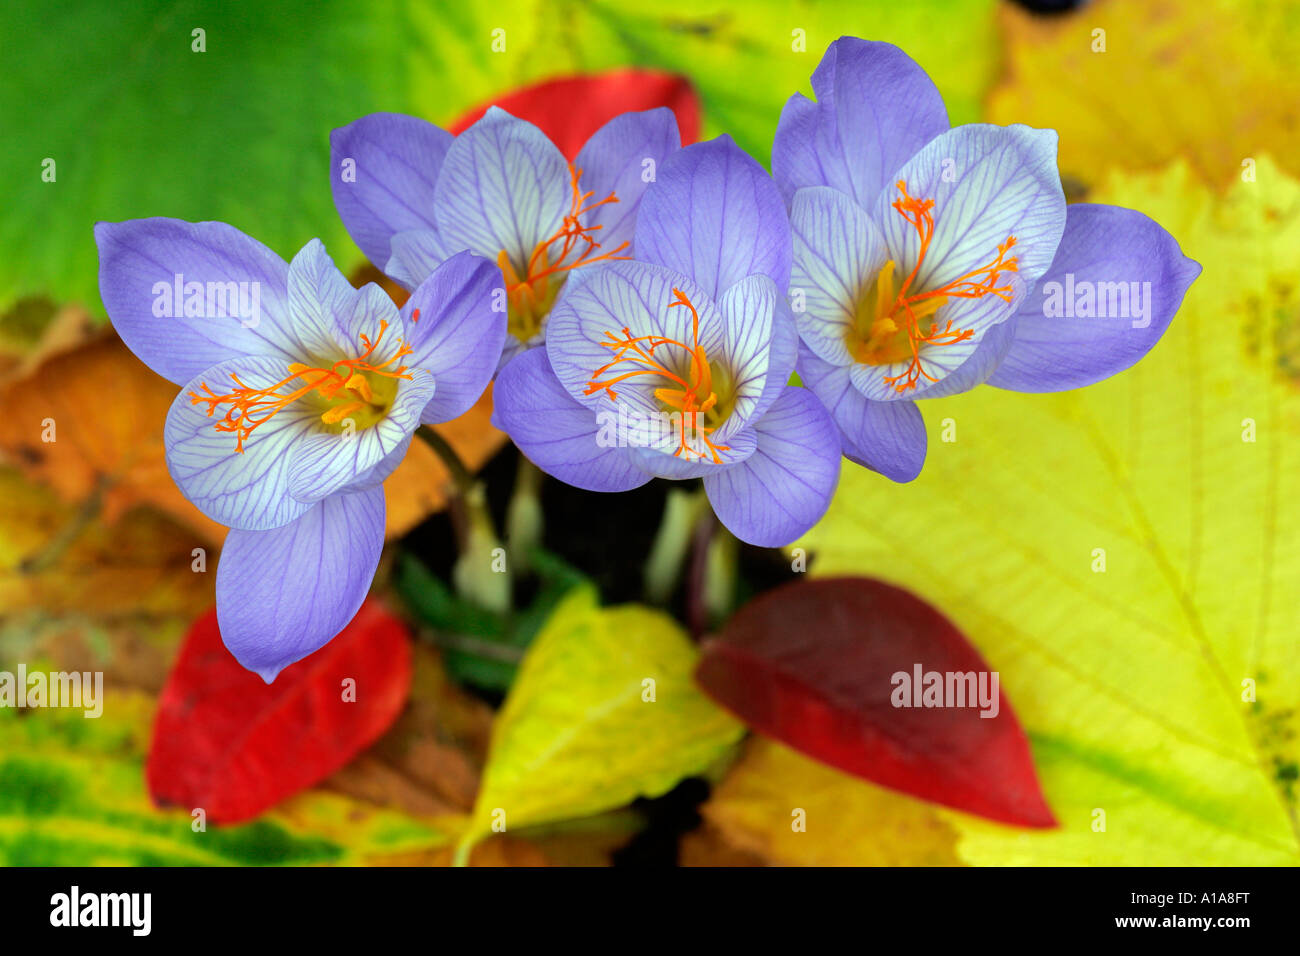 Flowering autumn-crocusses (Crocus pulchellus) Stock Photo